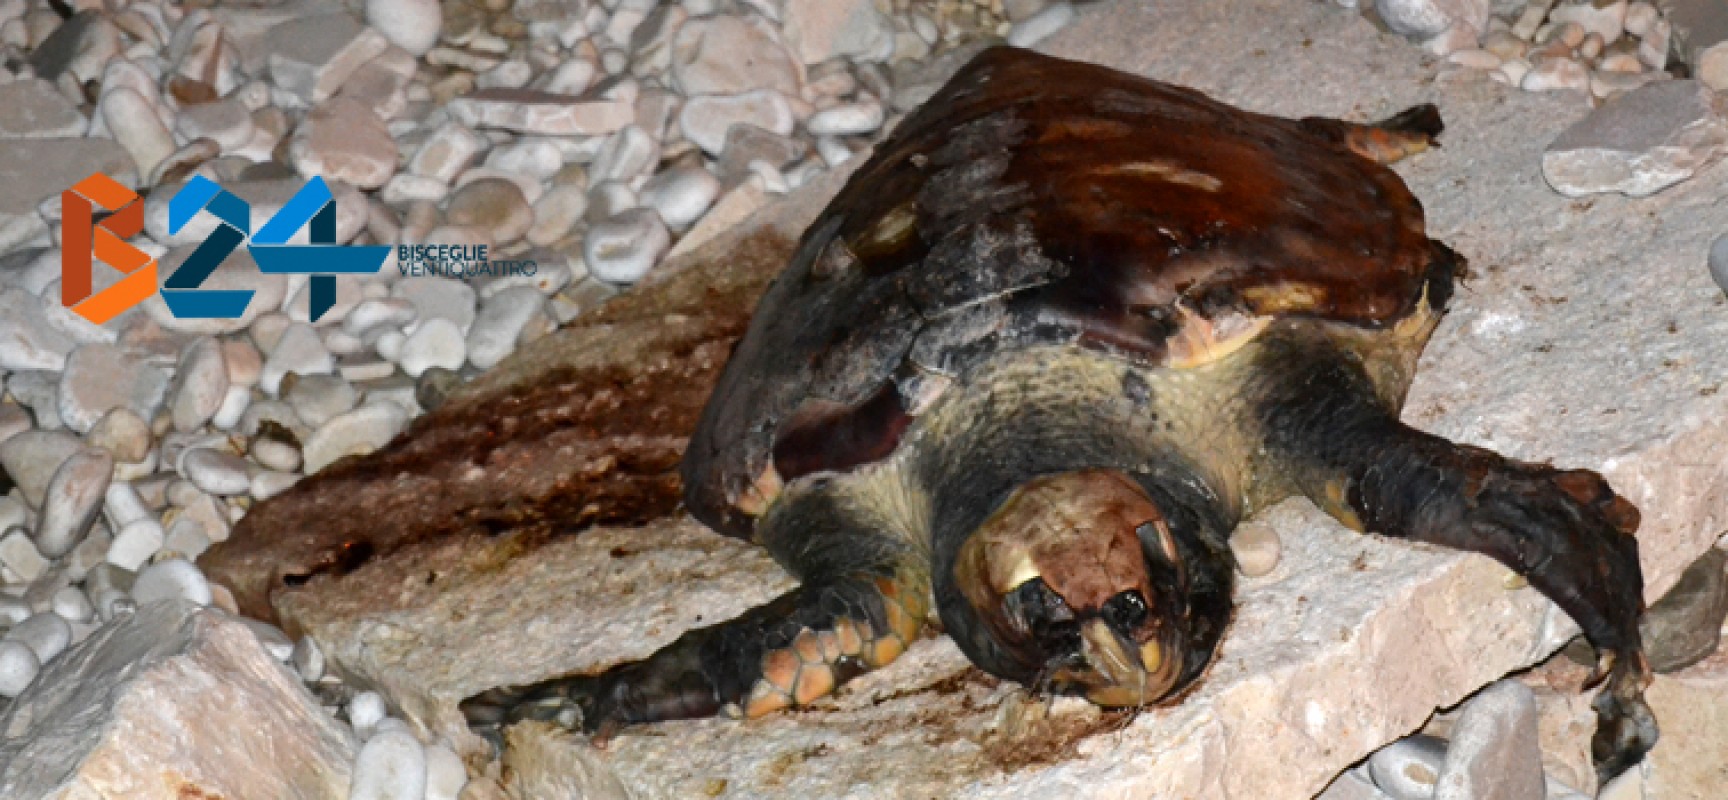 Ritrovata un’altra carcassa di tartaruga marina sulle coste biscegliesi